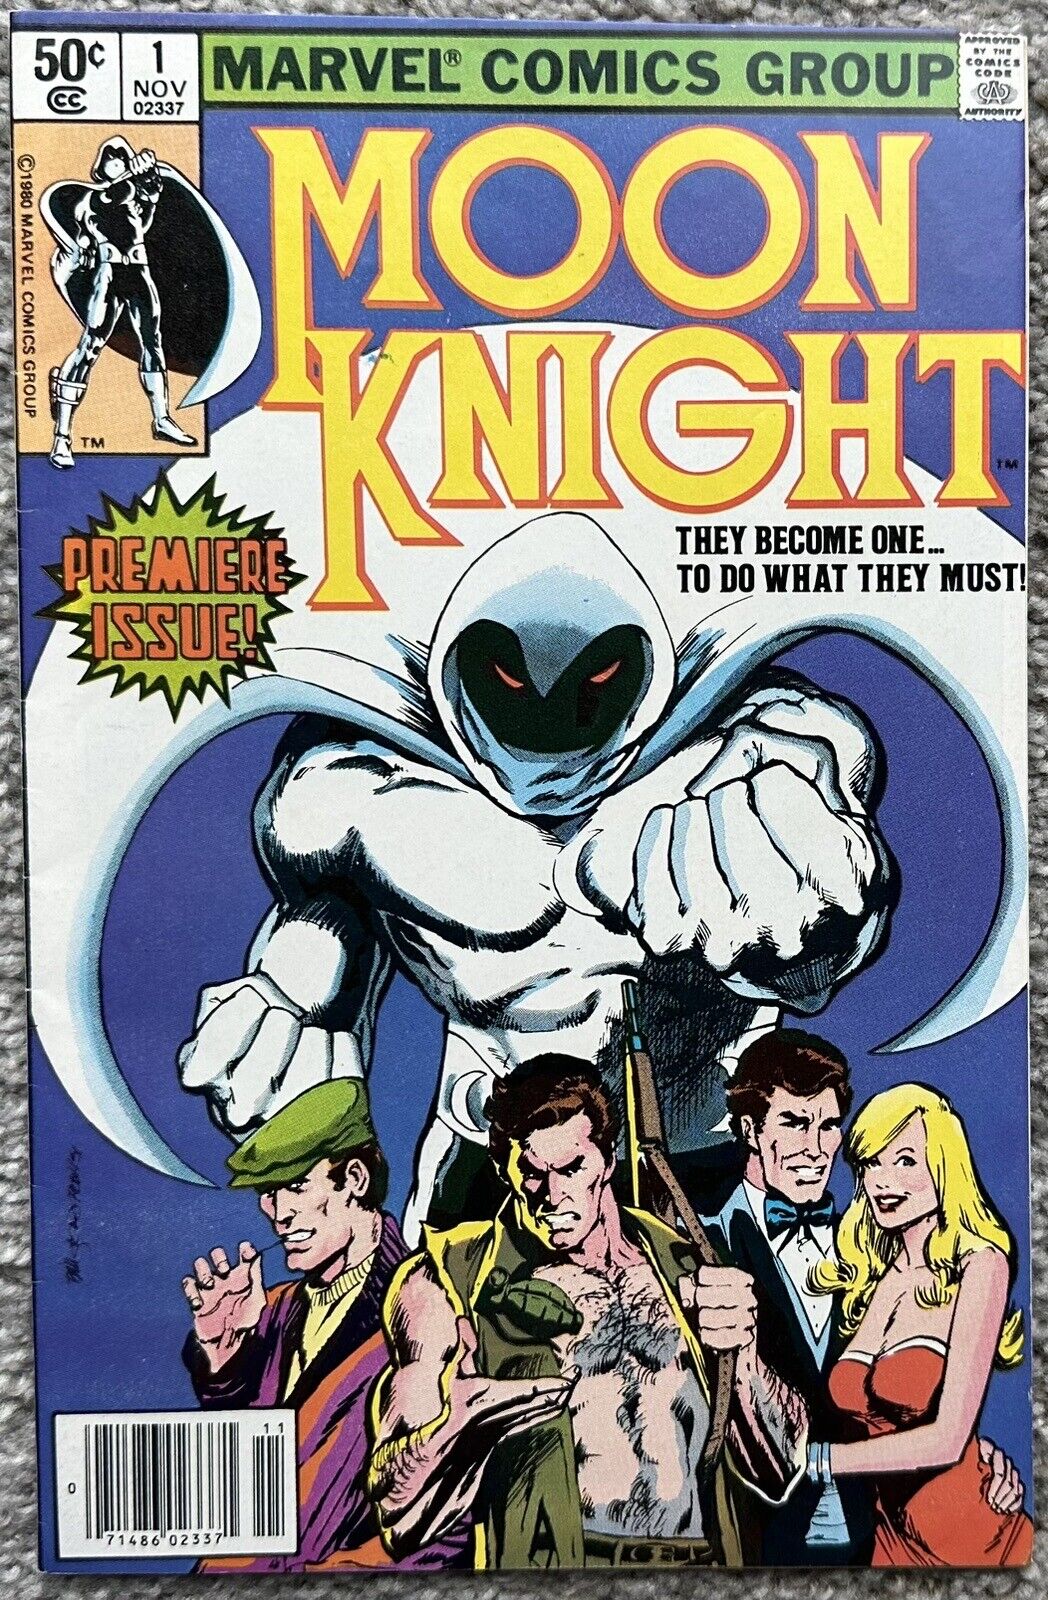 MOON KNIGHT #1 (MARVEL,1980) ORIGIN OF MOON KNIGHT